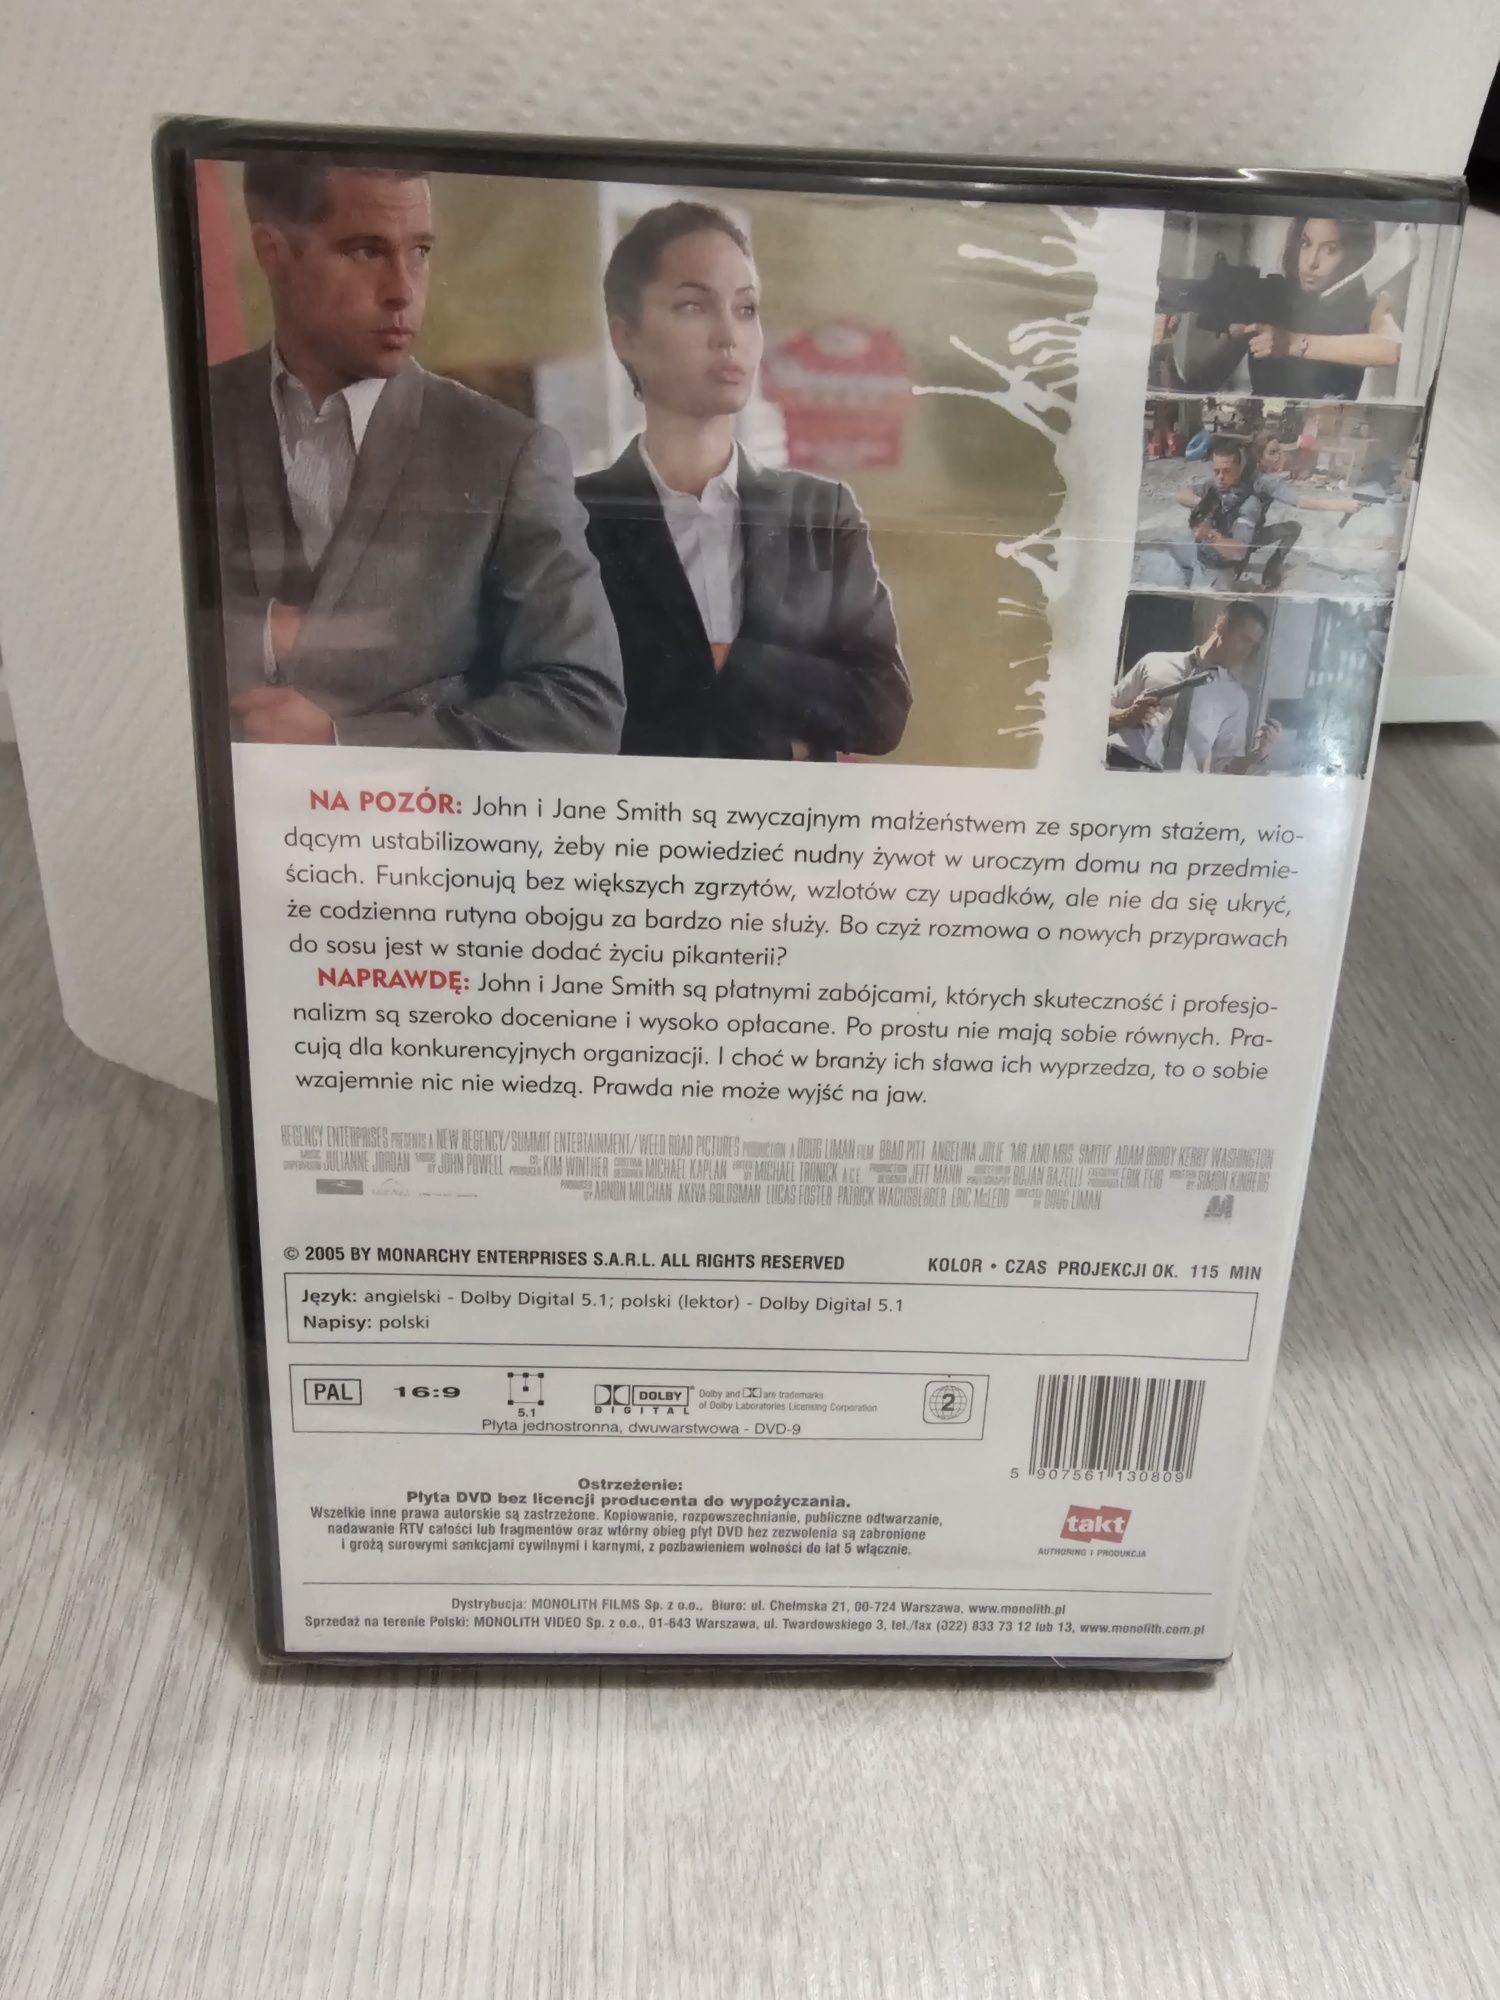 Sprzedam płytę DVD oryginalnie zapakowane